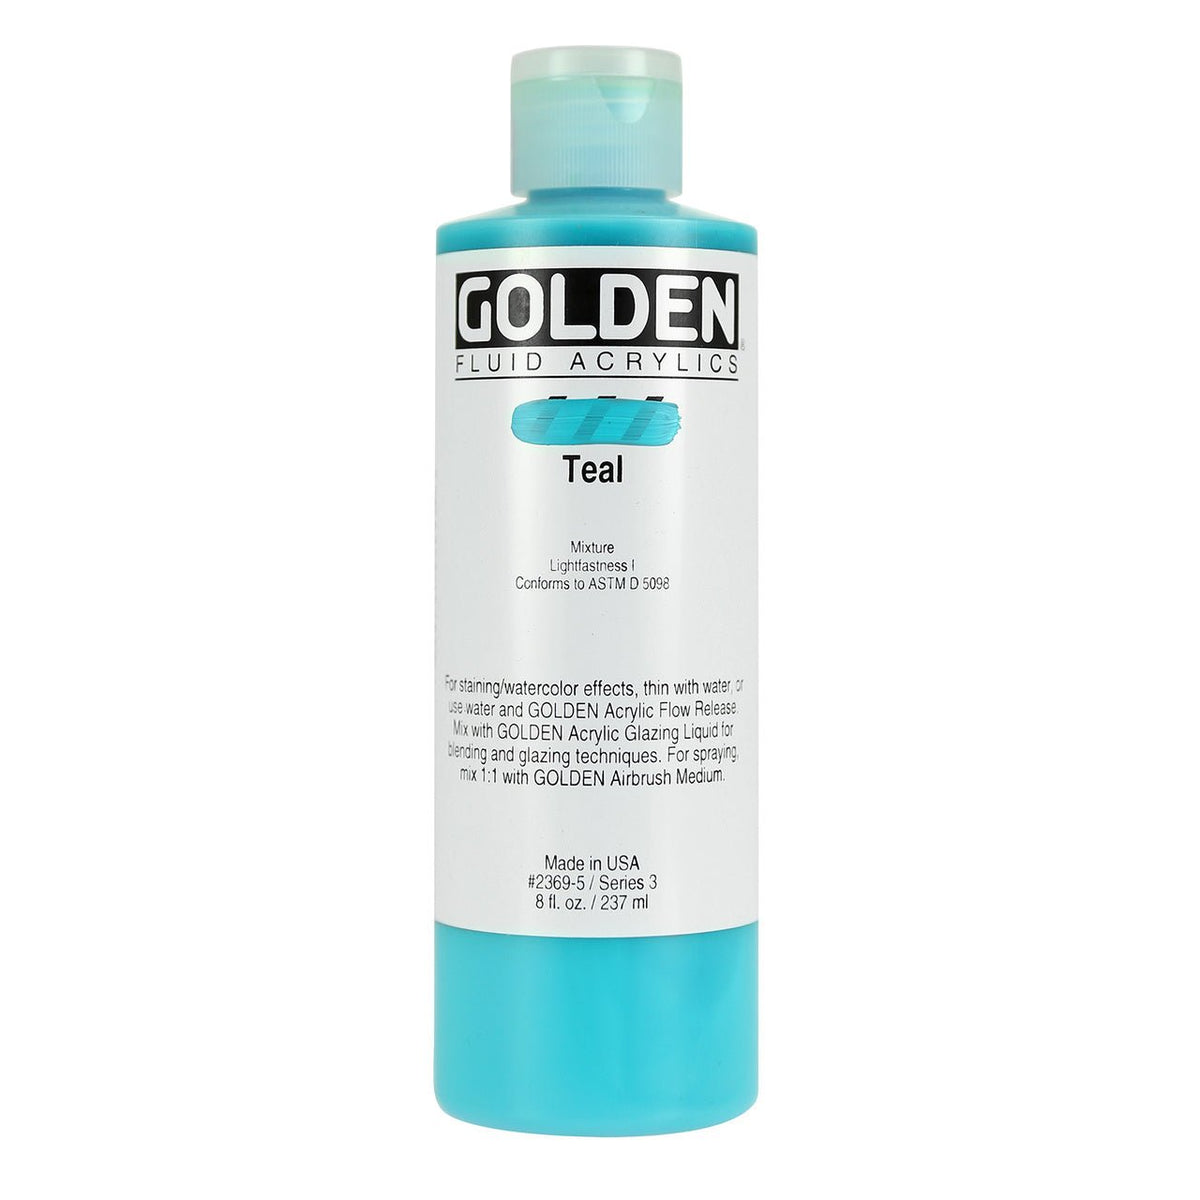 Golden Fluid Acrylic Teal 8 oz - merriartist.com